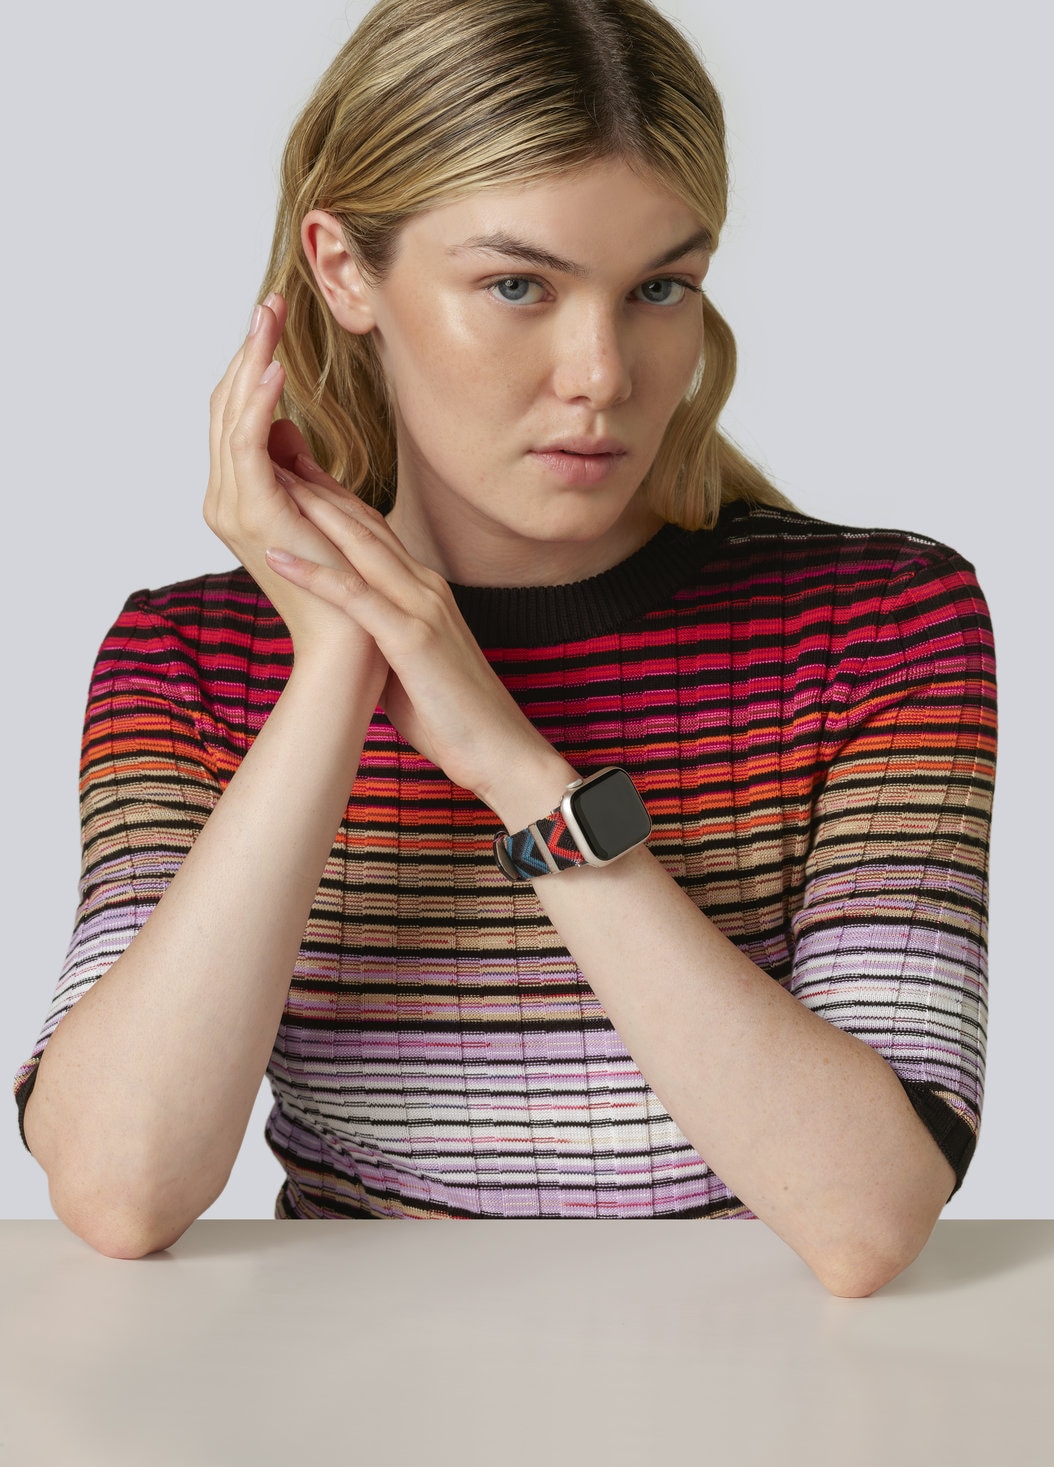 Missoni Fabric 24 mm mit Apple Watch kompatibles Armband, Mehrfarbig  - 8053147046259 - 1